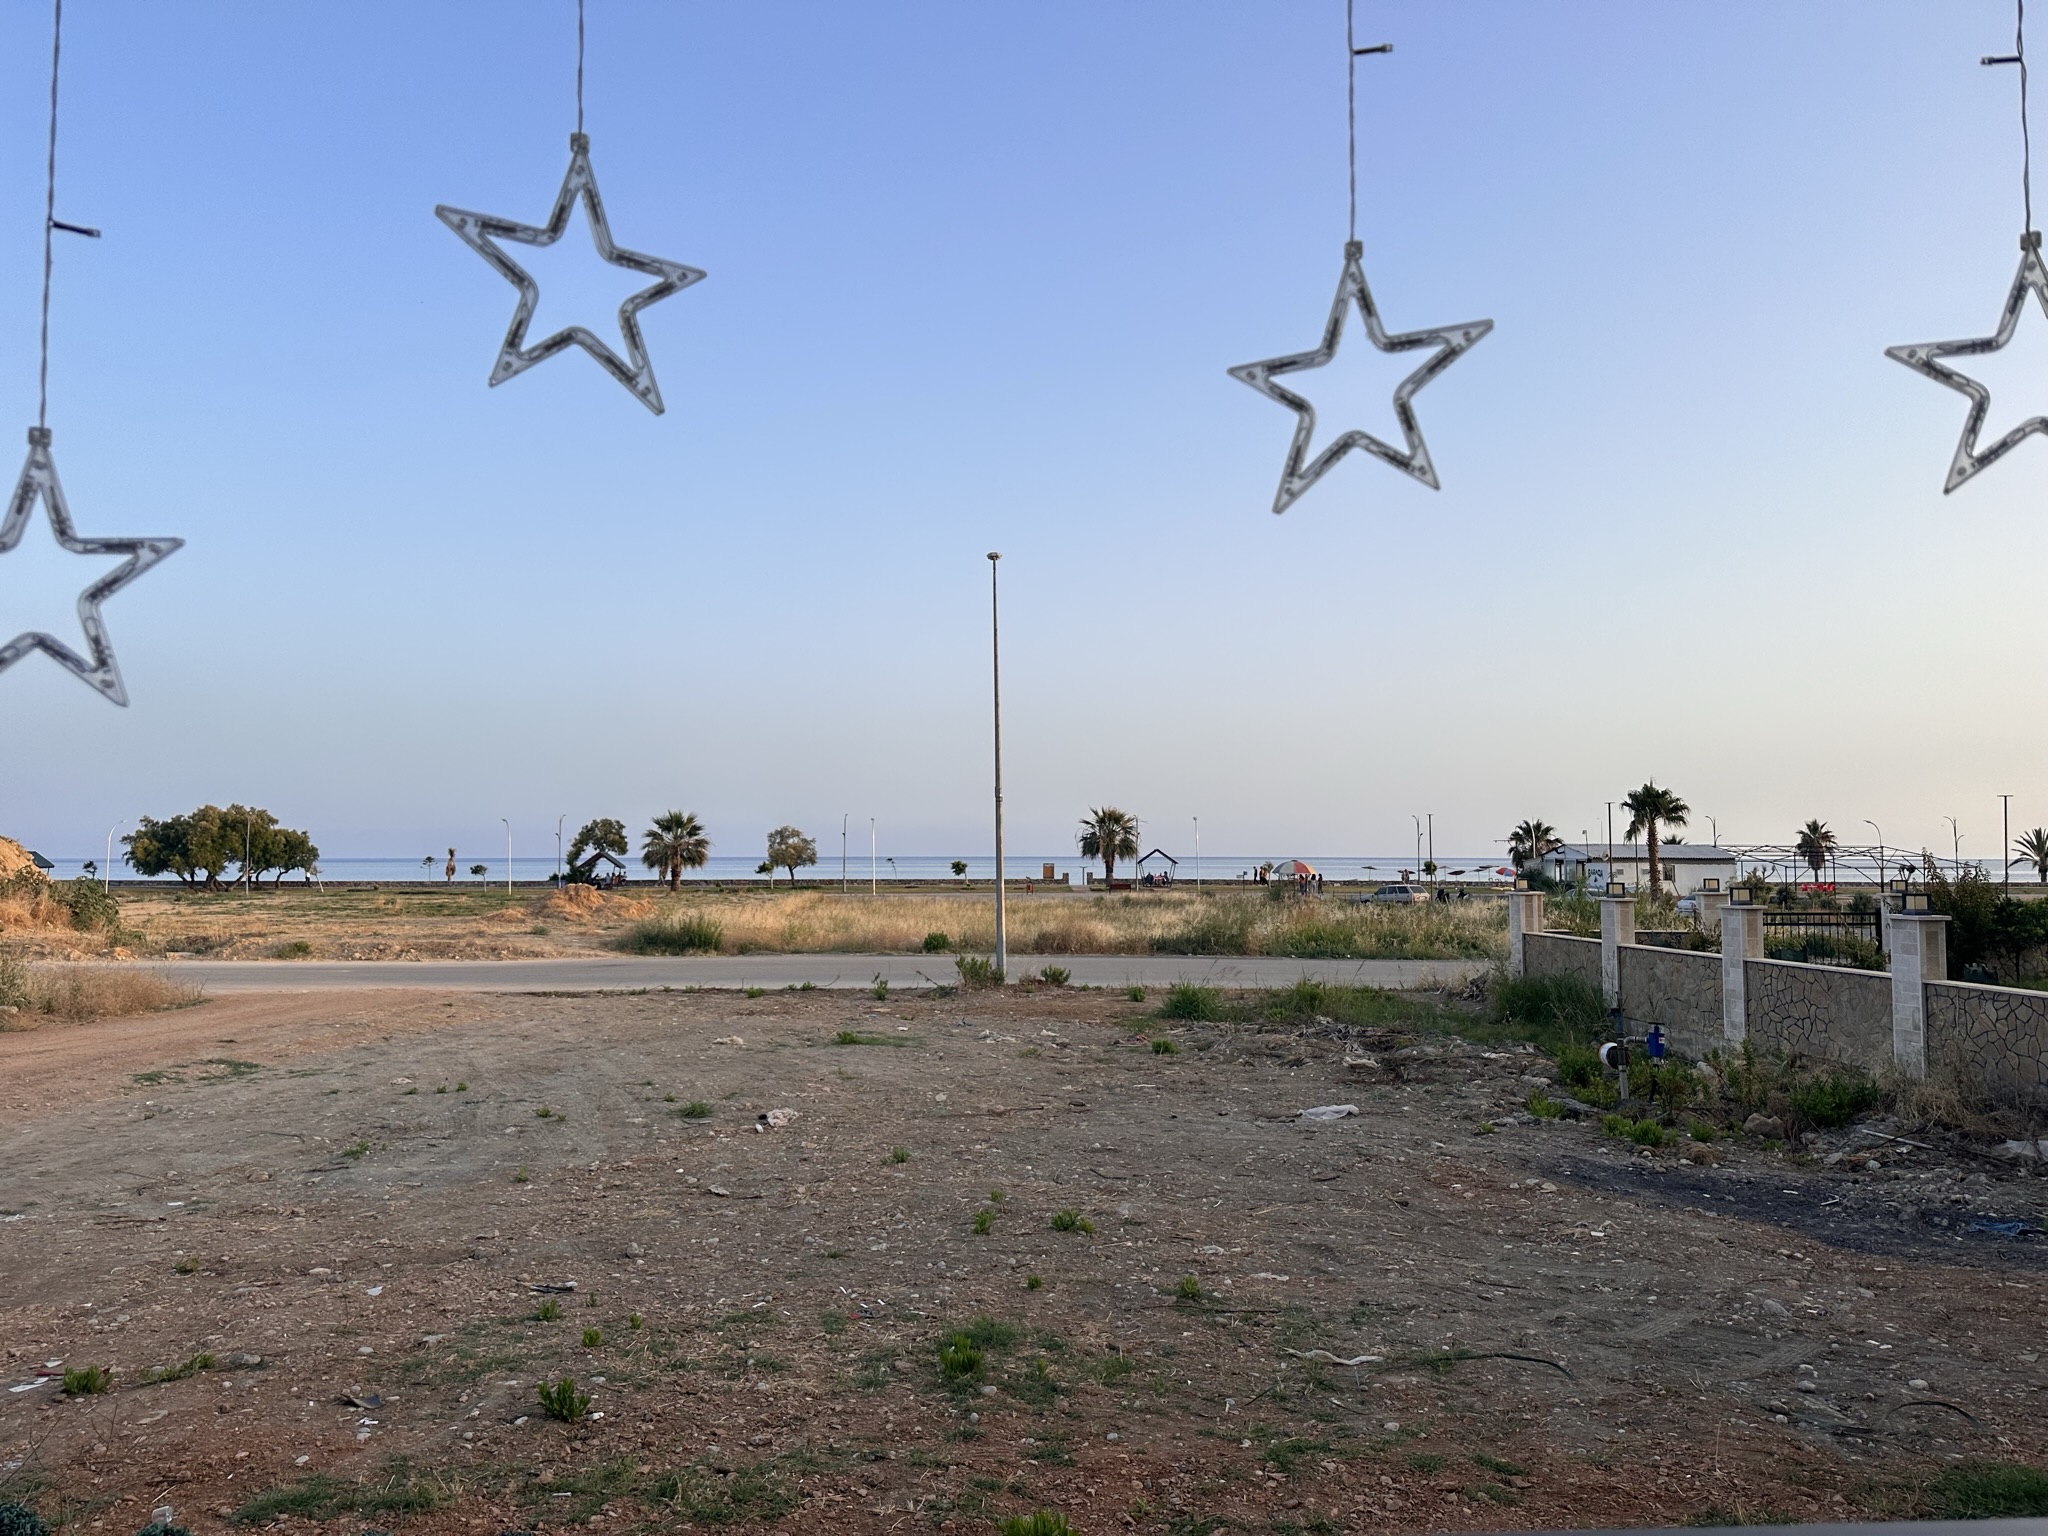 Бозязы Халк пляж (Bozyazi Halk Plajı) — 13 фото, как добраться